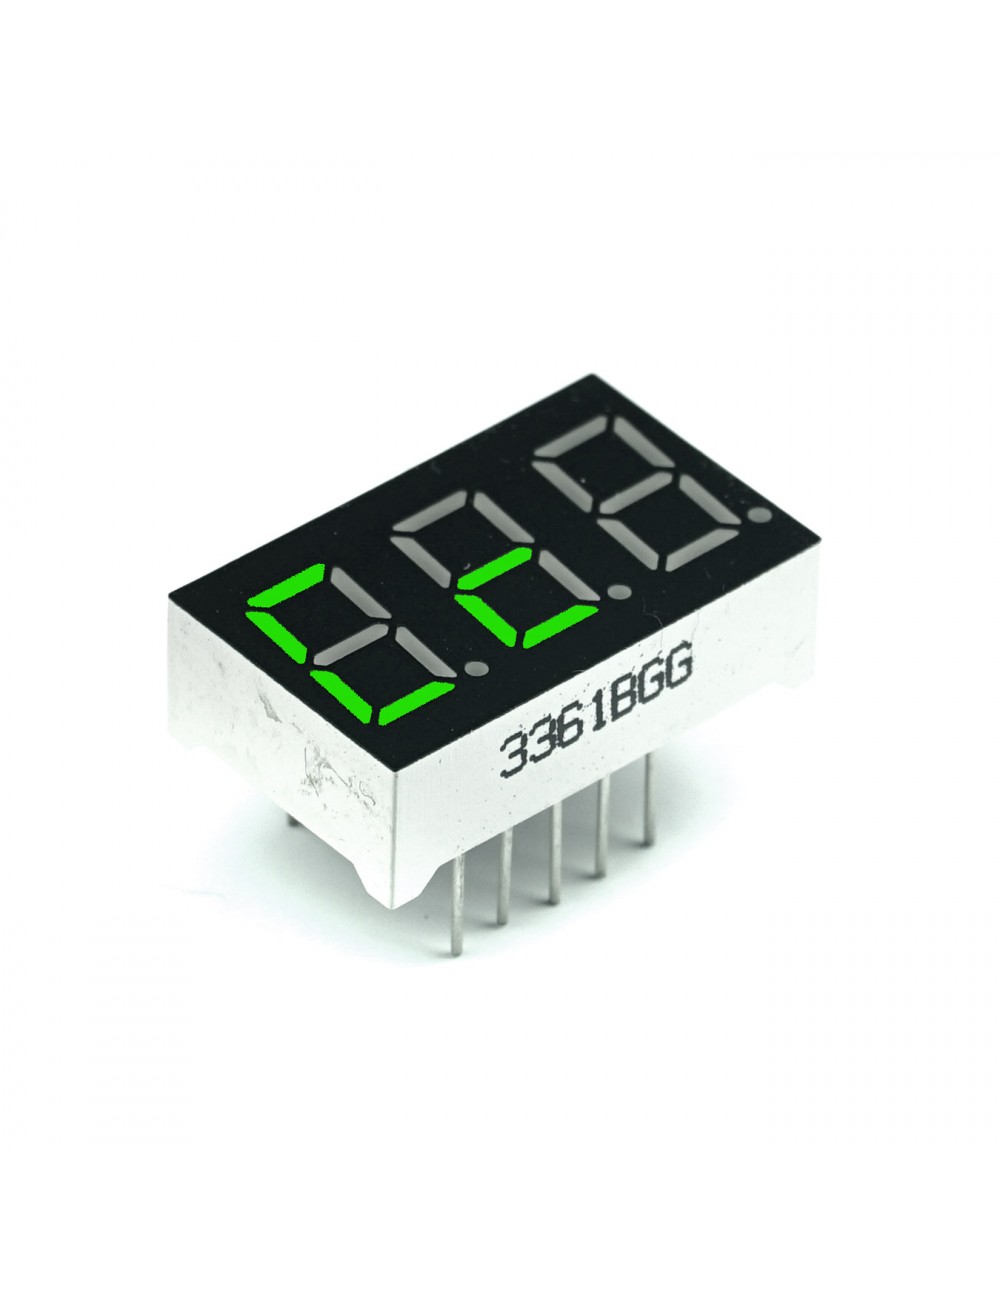 Wyświetlacz segmentowy LED 0.36" zielony, 3 znaki, wspólna anoda